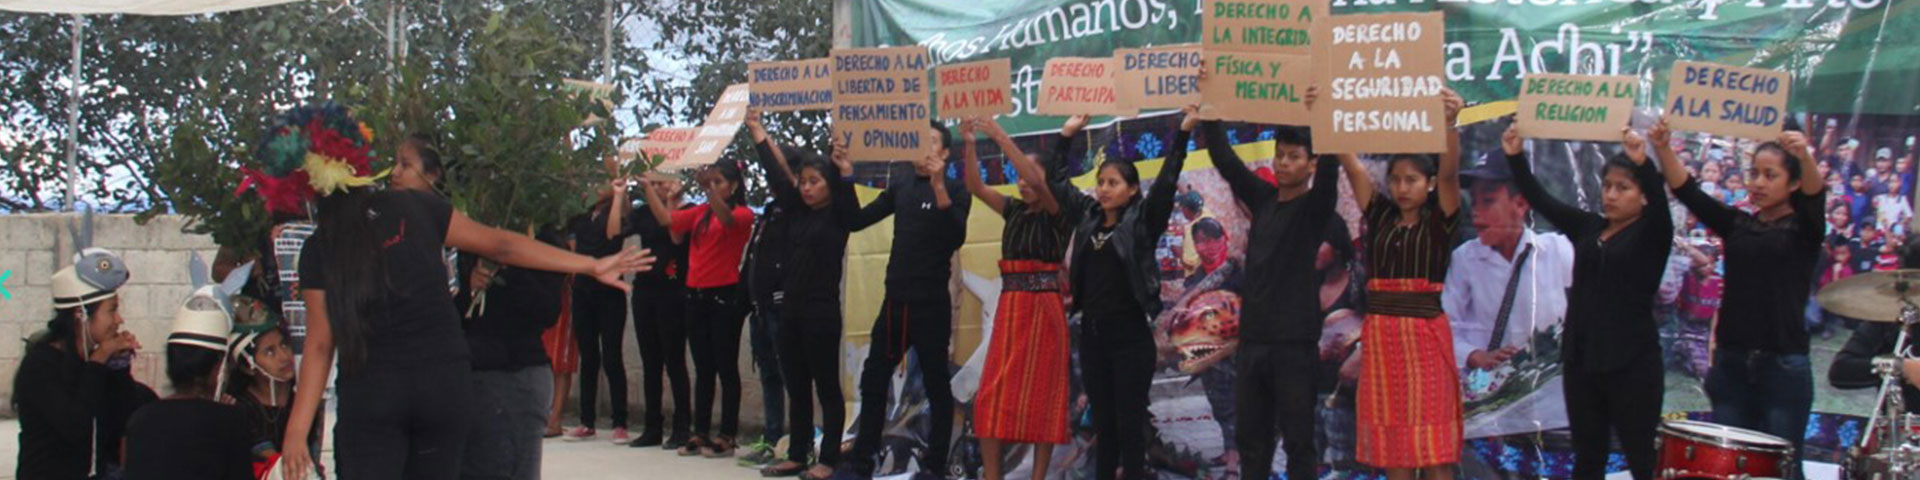 Varias personas sostienen carteles durante un festival.